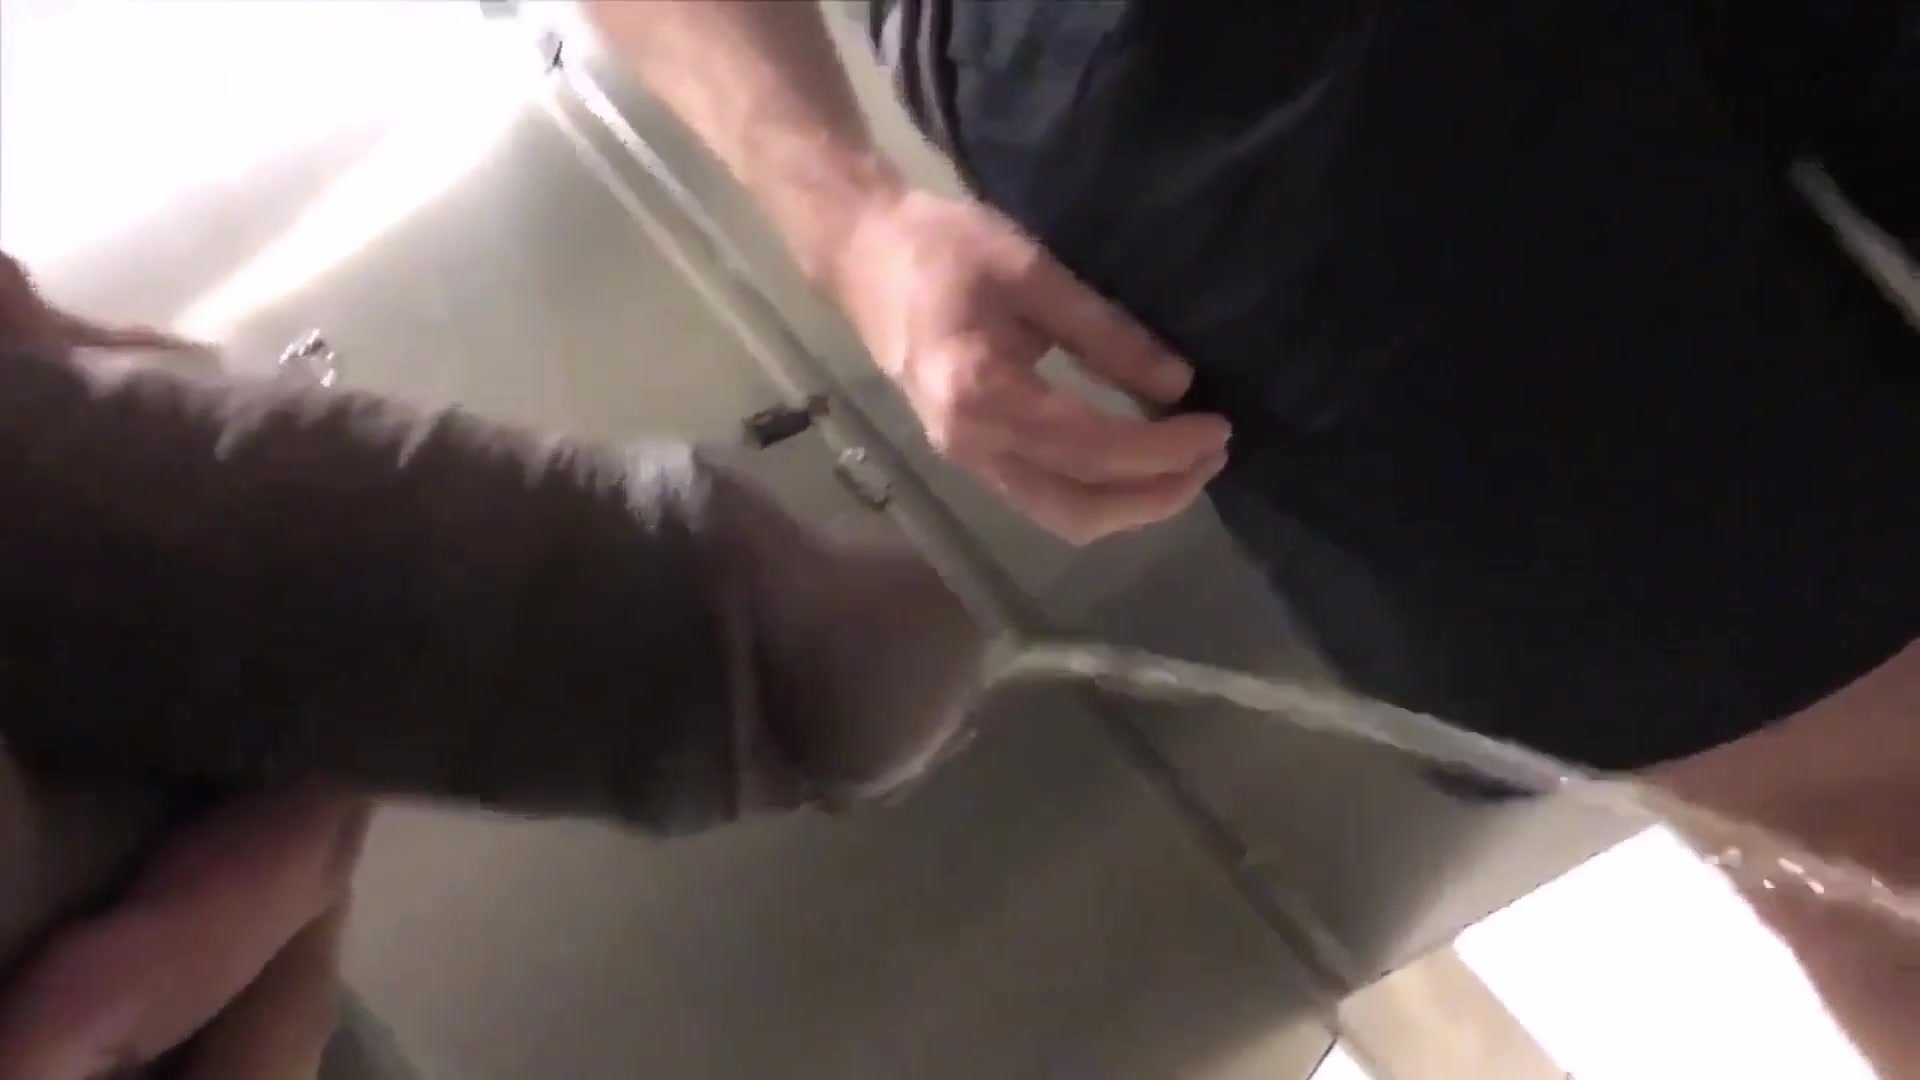 Guy tastes his friend's piss in a public bathroom!